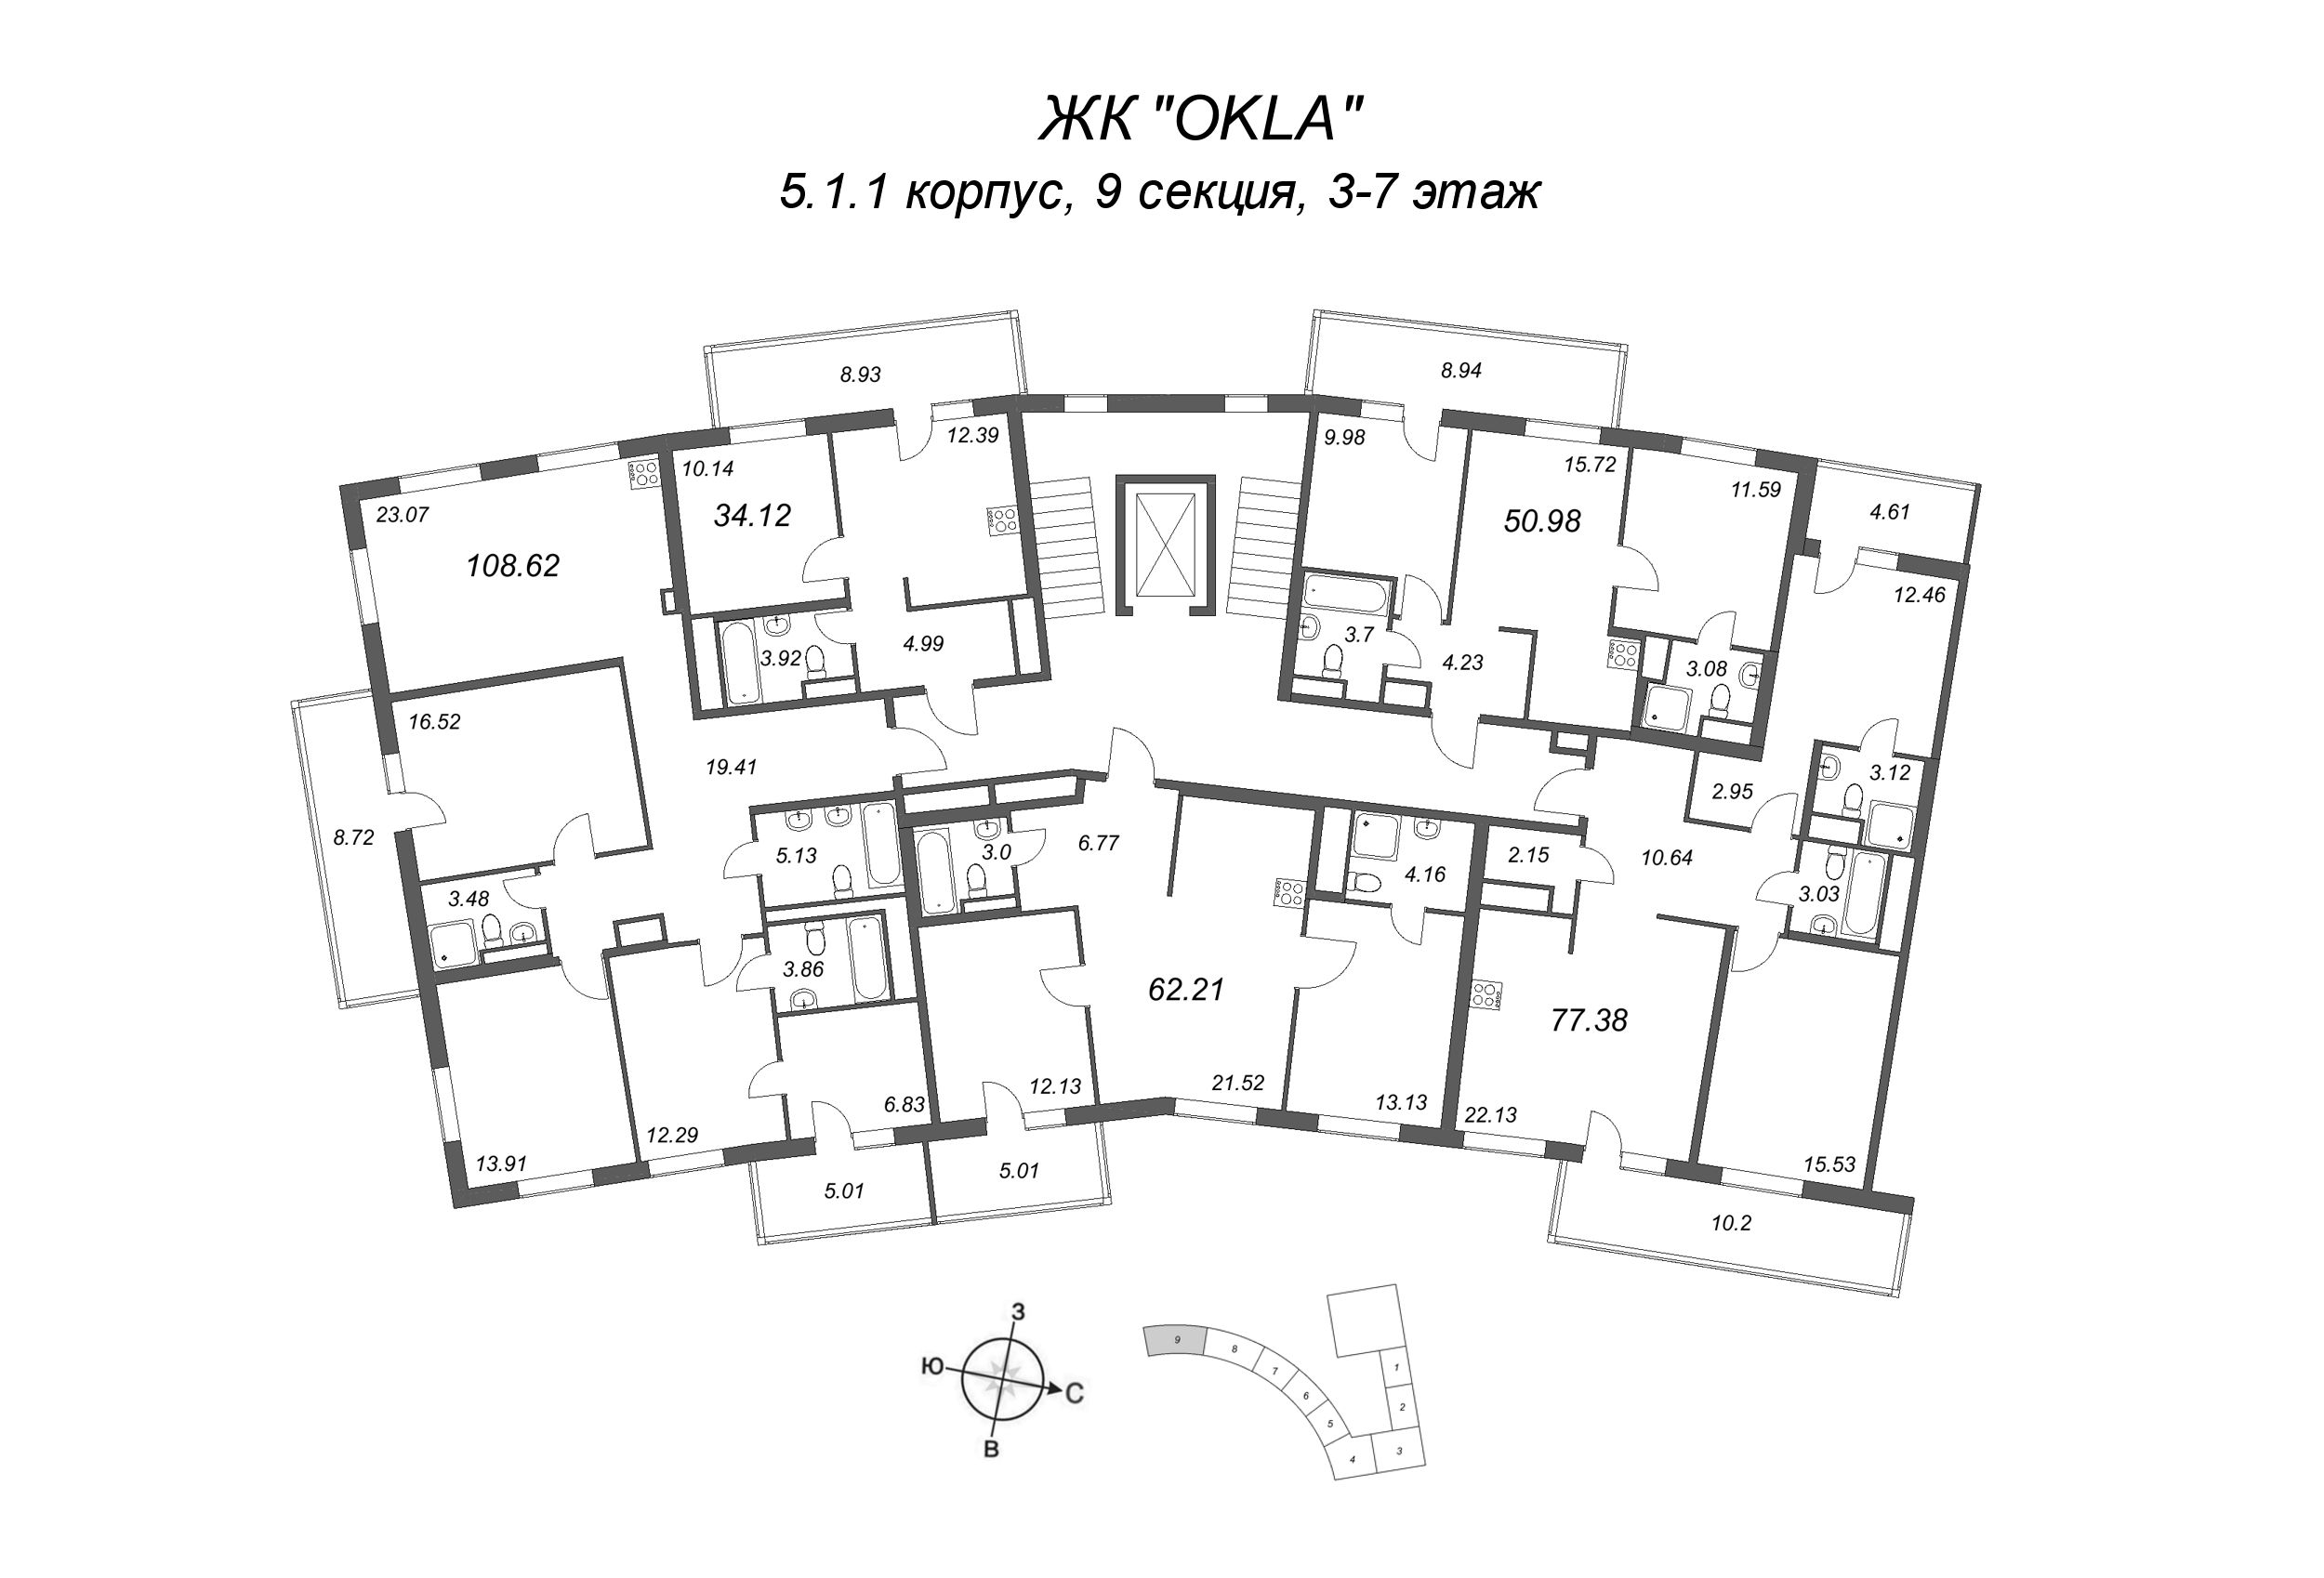 3-комнатная (Евро) квартира, 65.71 м² в ЖК "OKLA" - планировка этажа